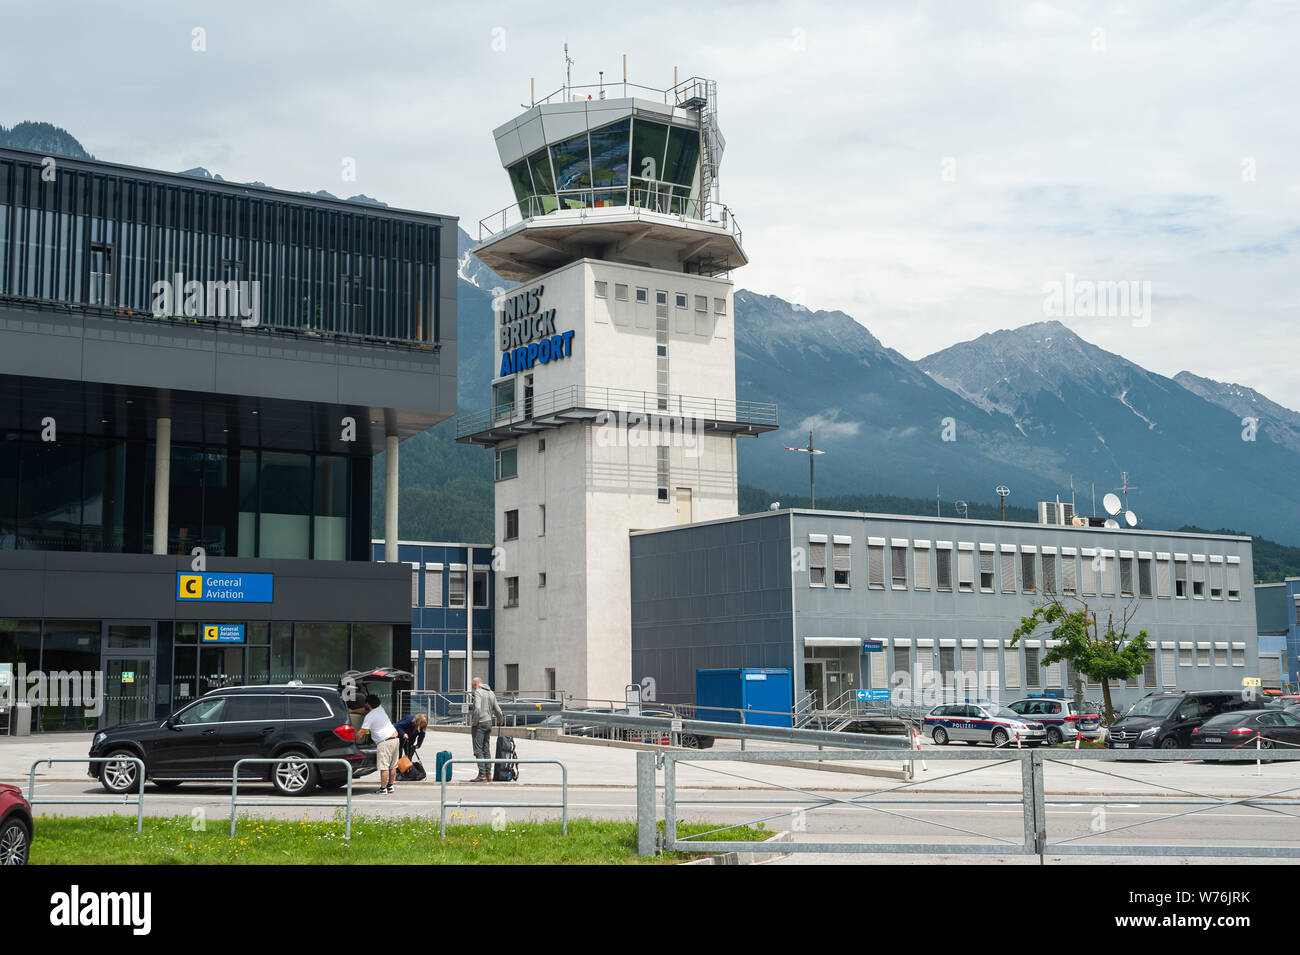 22.06.2019, Innsbruck, in Tirolo, Austria, Europa - vista esterna dall'aeroporto di Innsbruck con la torre di ATC e il terminale di partenza e di arrivo. Foto Stock